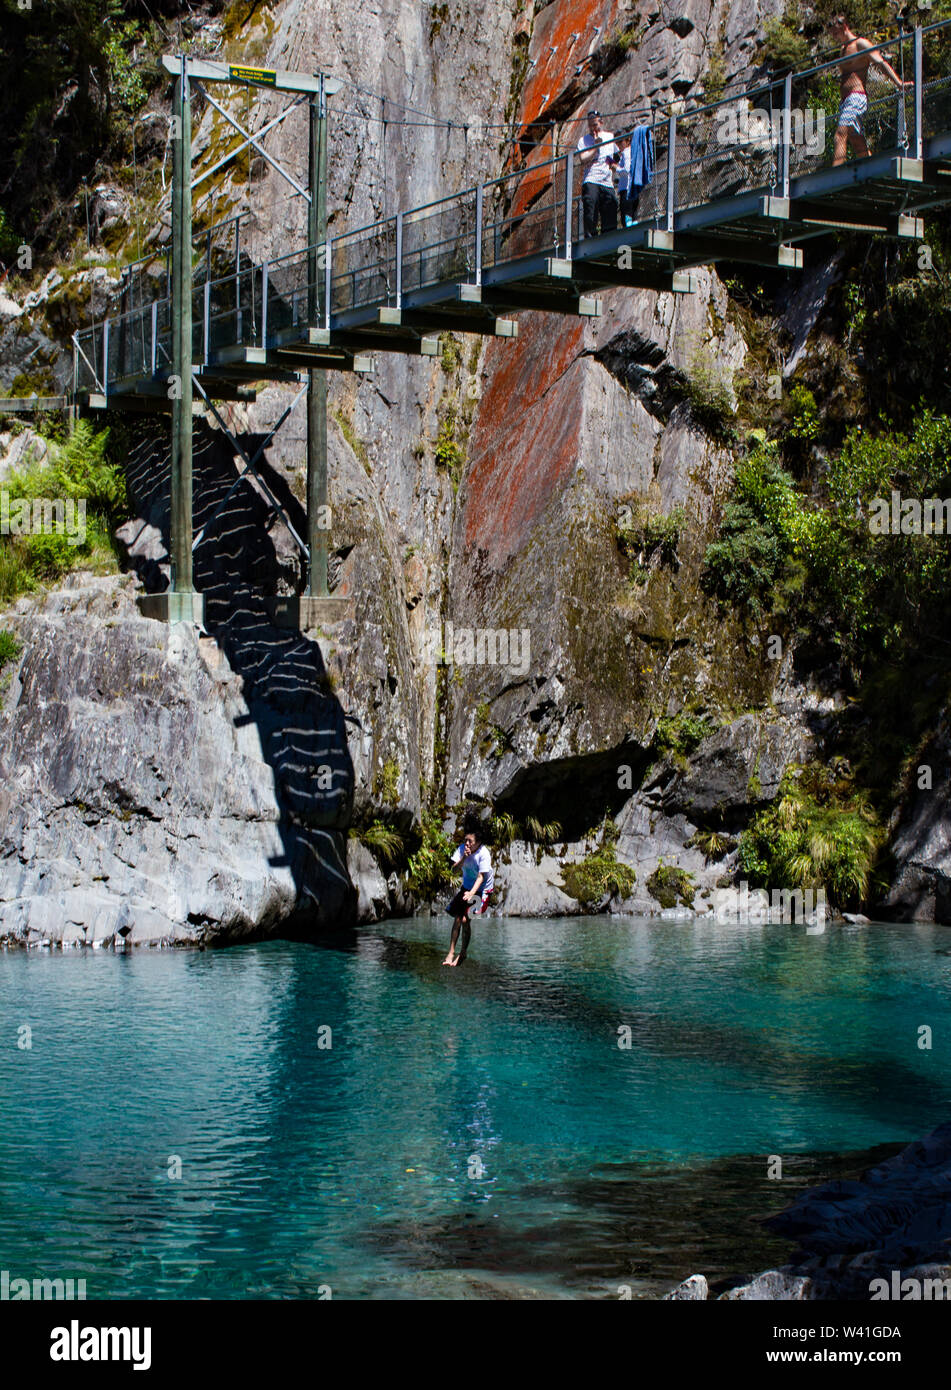 Sautant du pont sur le bleu des piscines, Wanaka Nouvelle-zélande Banque D'Images